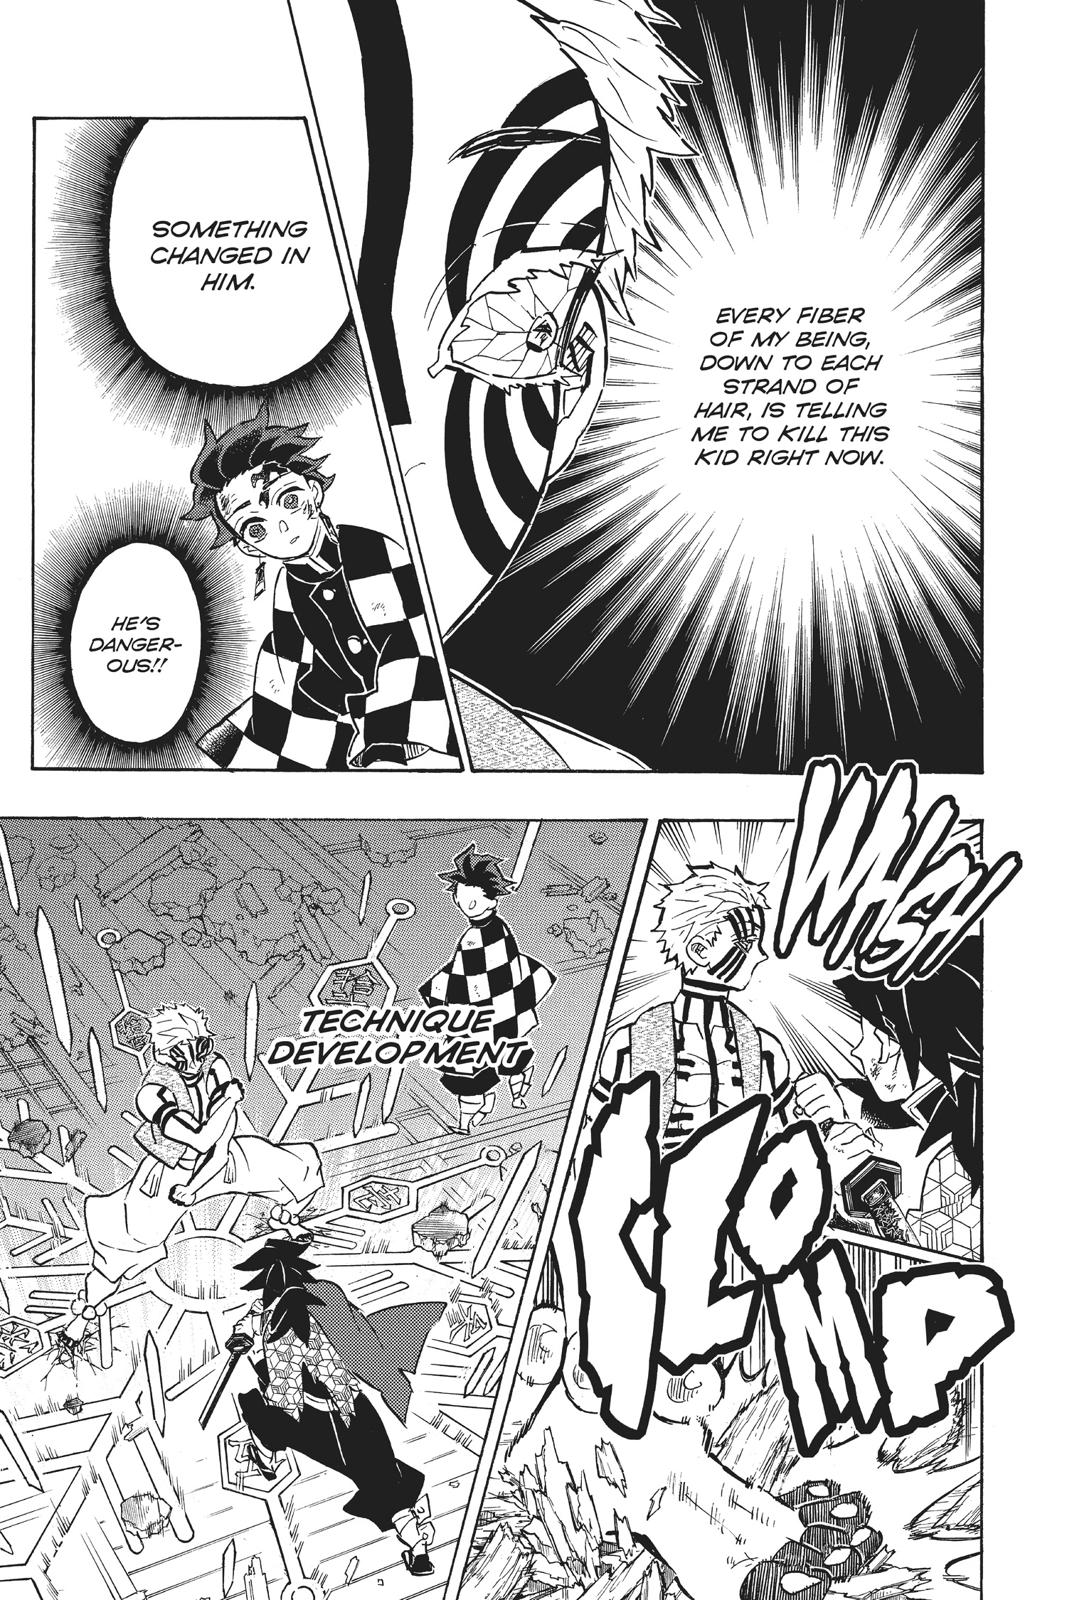 Demon Slayer Manga Manga Chapter - 152 - image 9